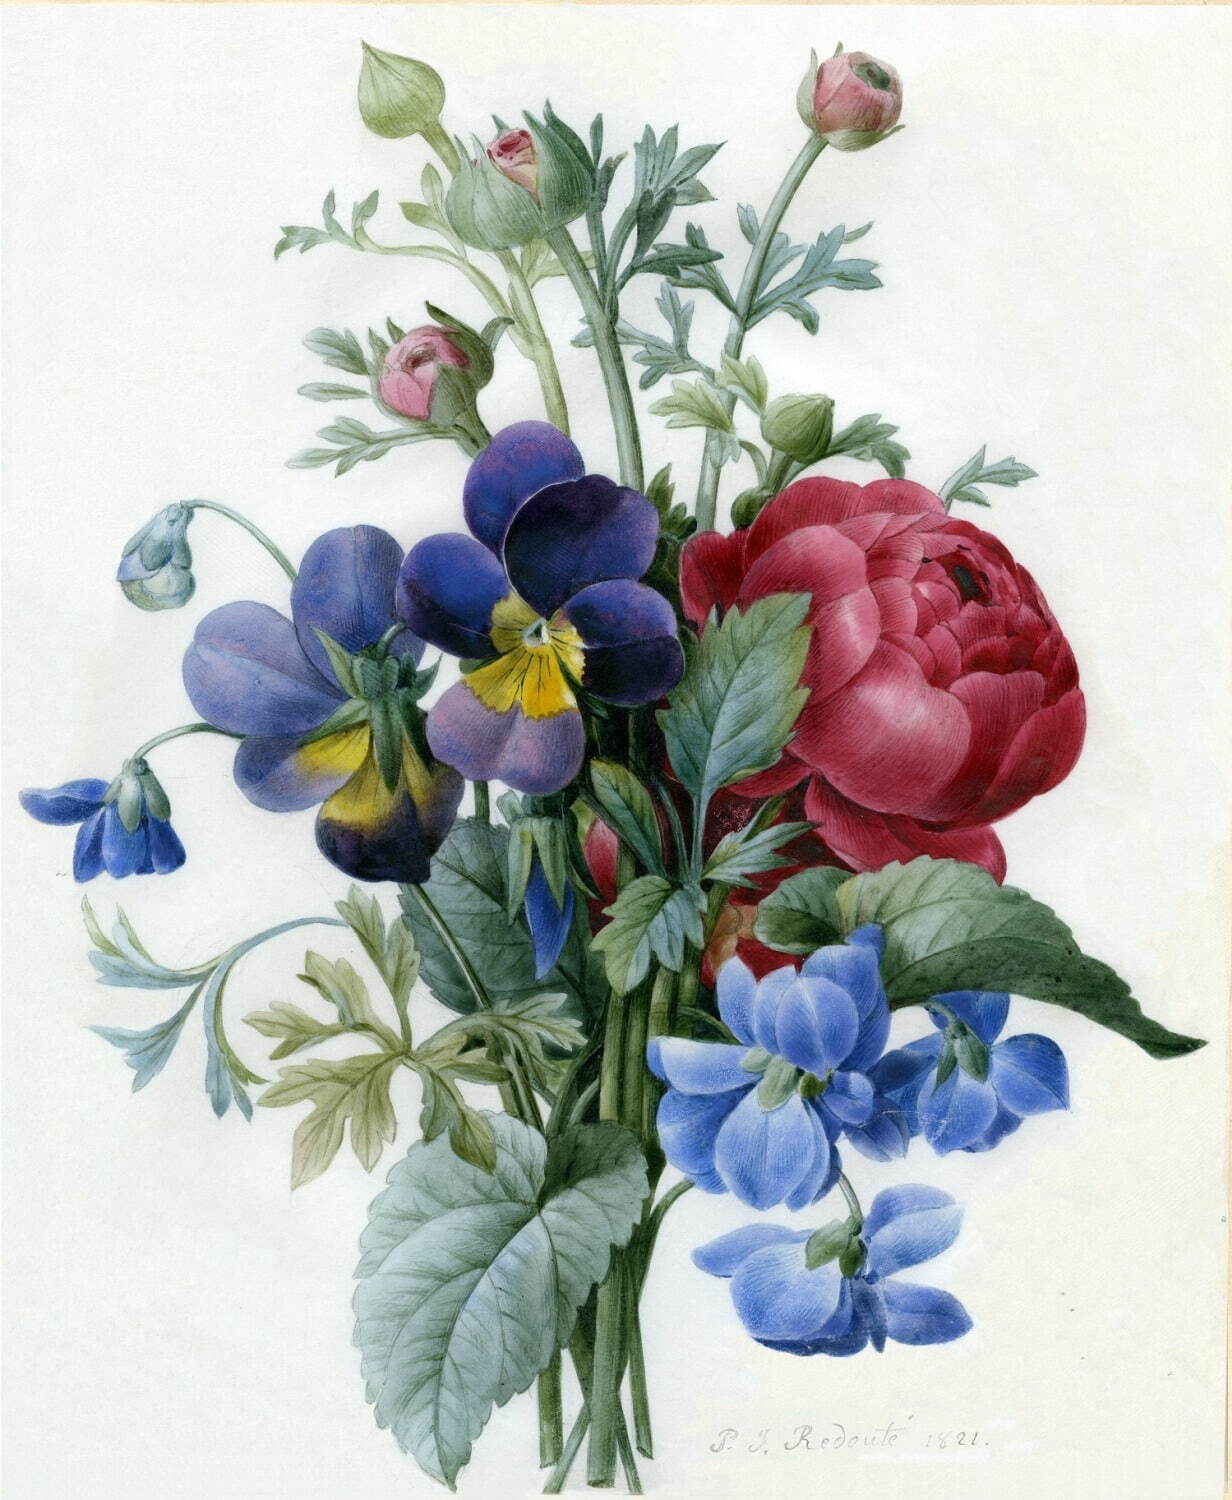 肉筆画《赤のラナンキュラス、紫と黄色のパンジーの花束》 1821年